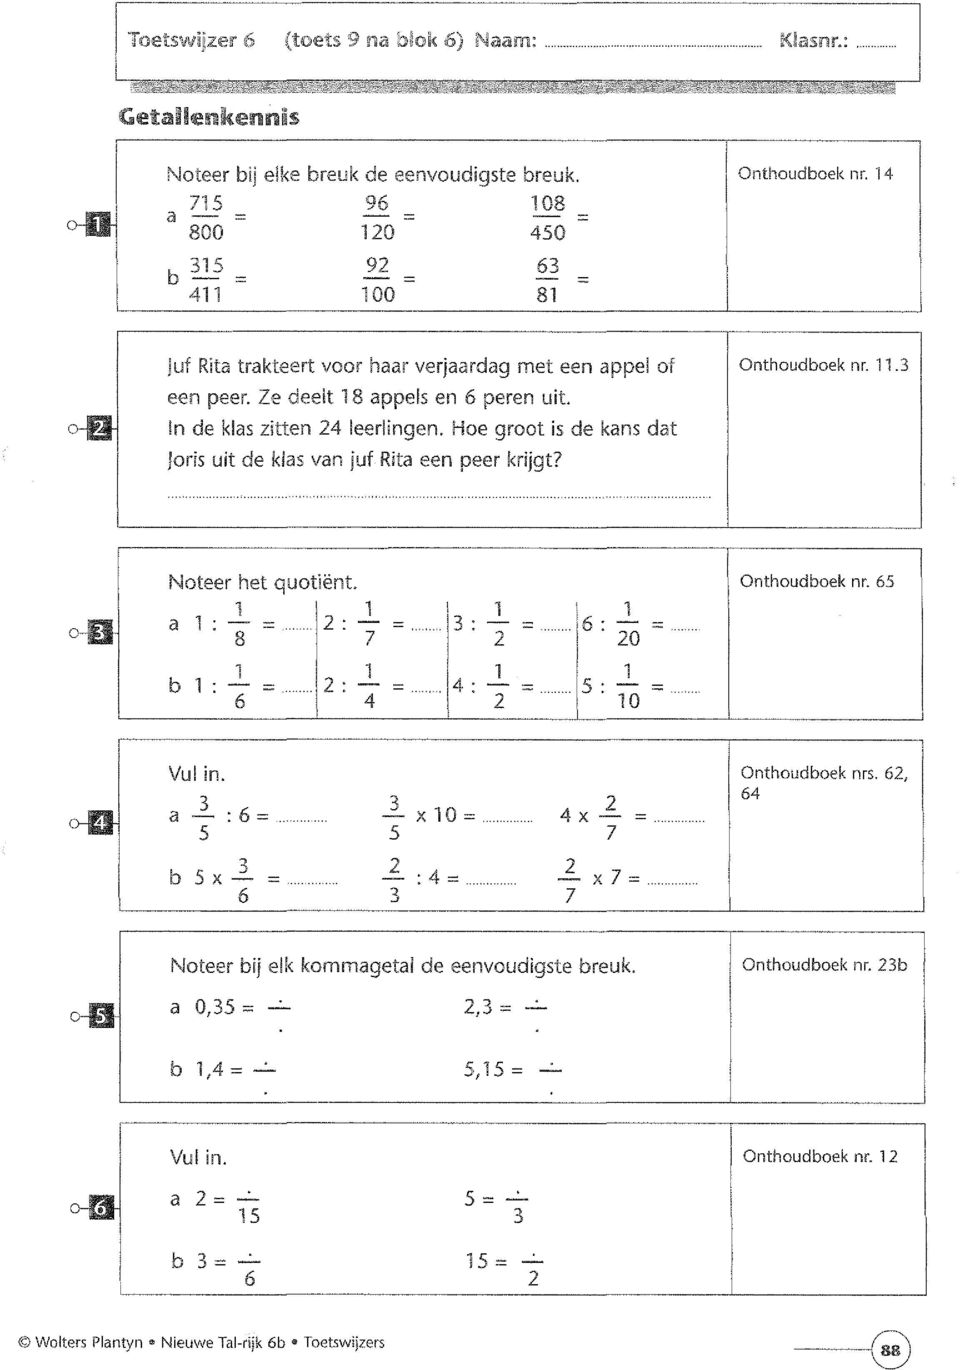 Hoe groot is de kans dat Joris uit de klas van juf Rita een peer krijgt? Onthoudboek nr..3 o-d Noteer het quotiënt. a - = 8... 2-7 b - = 6... 2-4 =..,, 3 - =..... 6 - = 2 20 =..., 4 - =.... 5 - = 2 0.